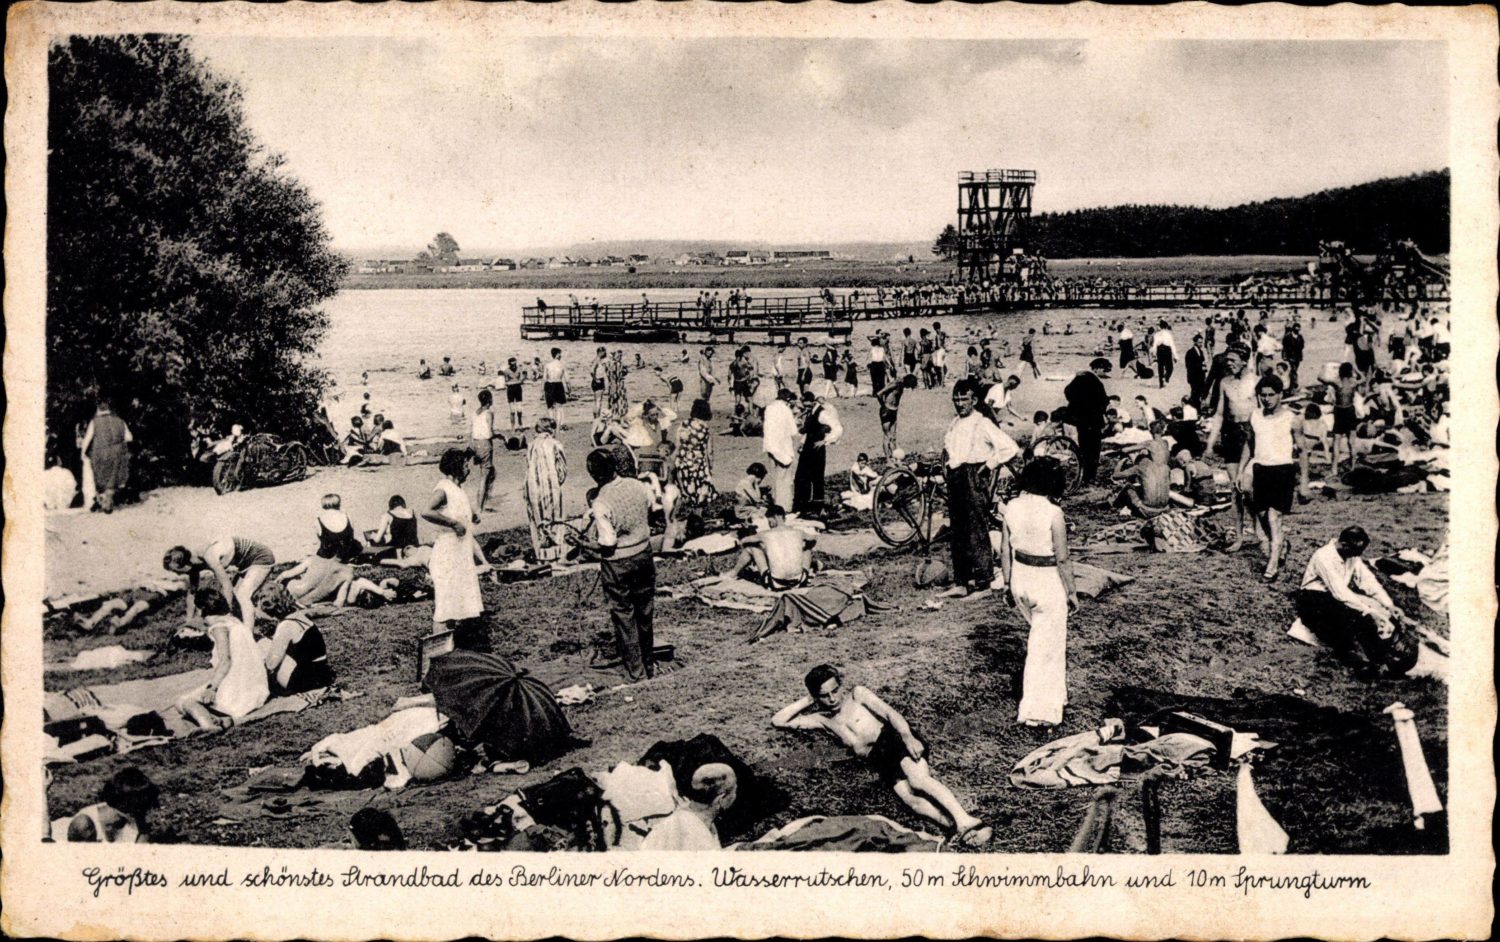 Berlin: Baden und Schwimmen in den letzten 100 Jahren